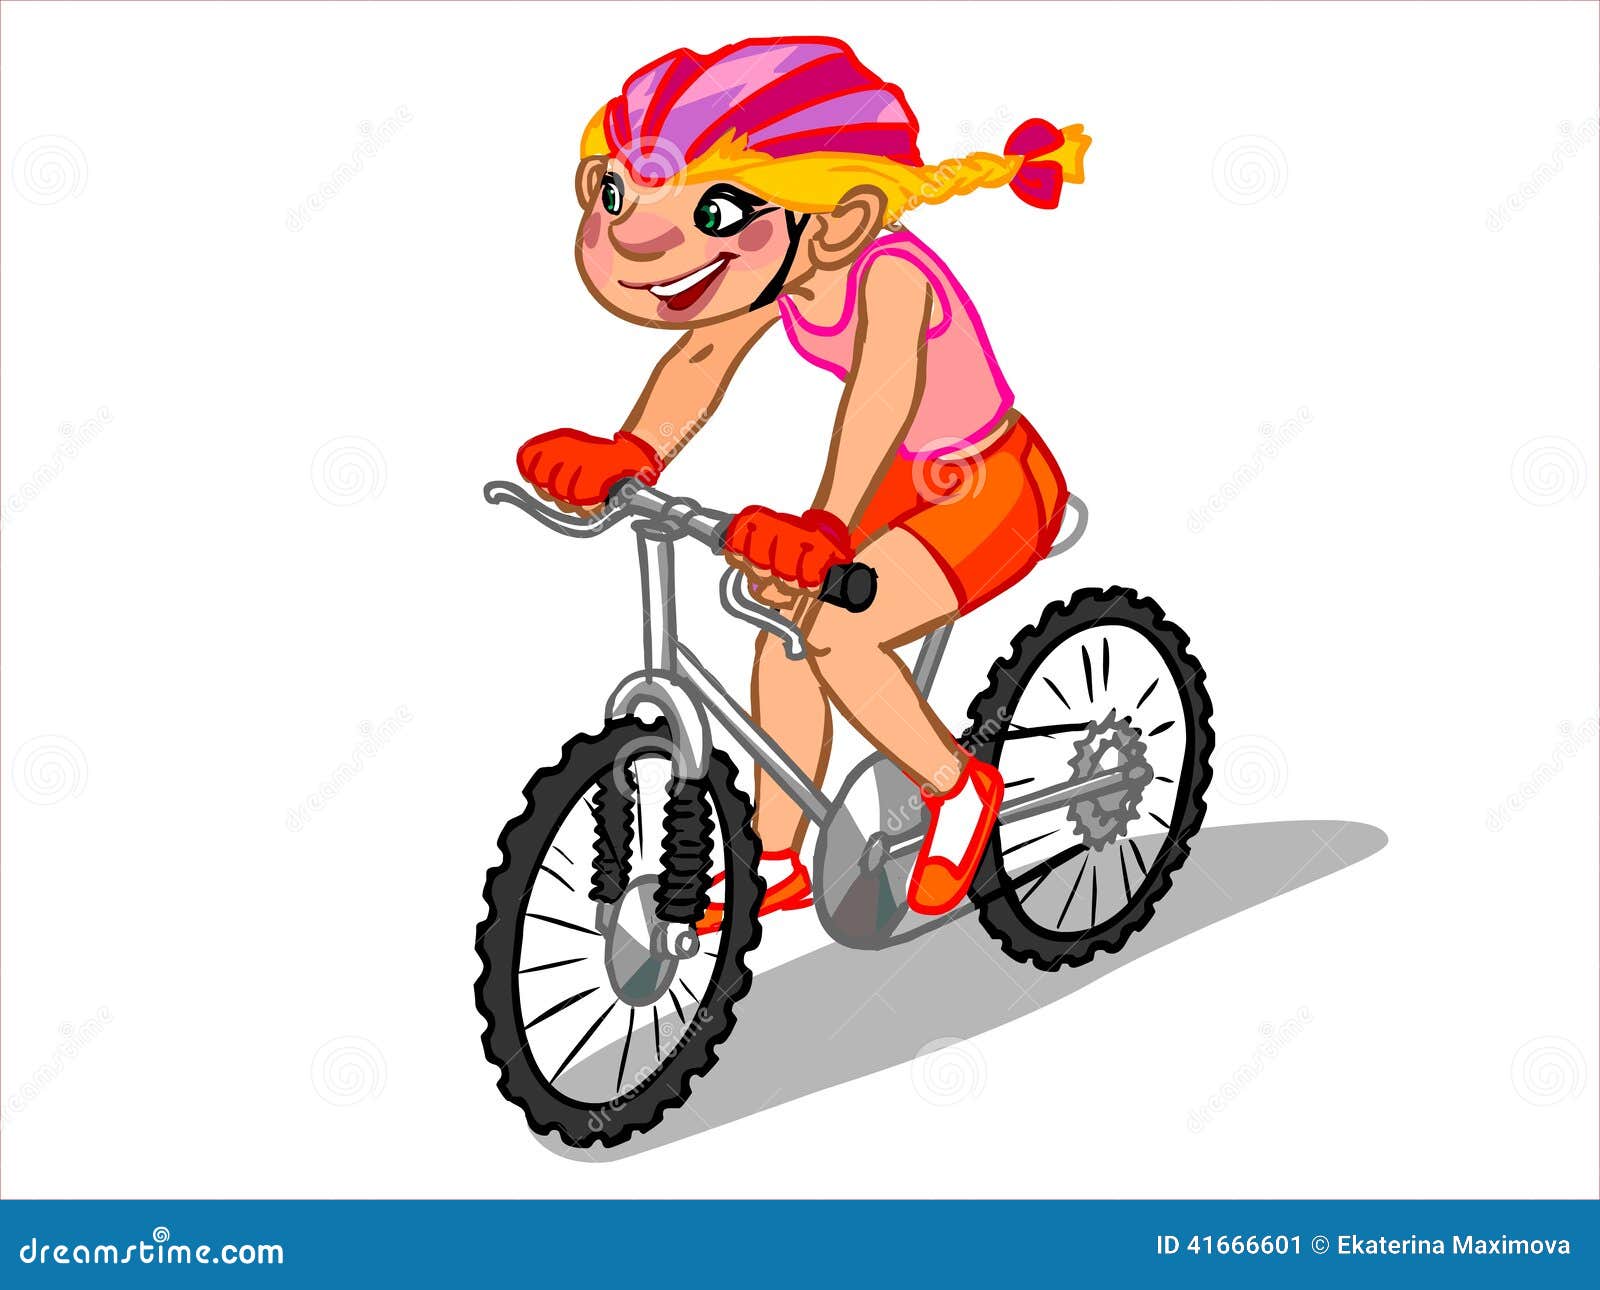 girl on bike clipart - photo #44